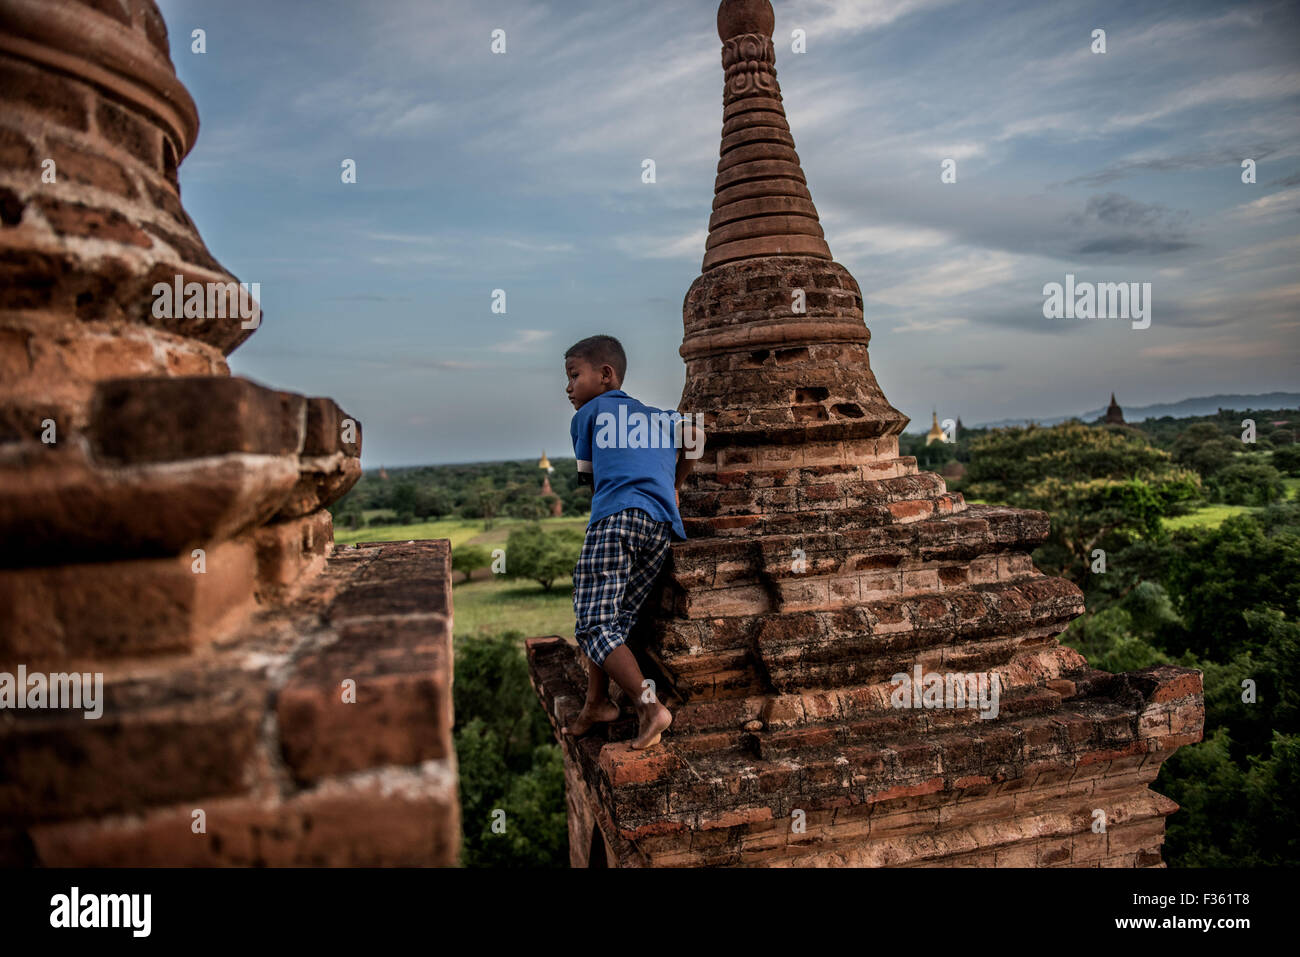 Los niños juegan en un templo en Bagan, Myanmar. Foto de stock